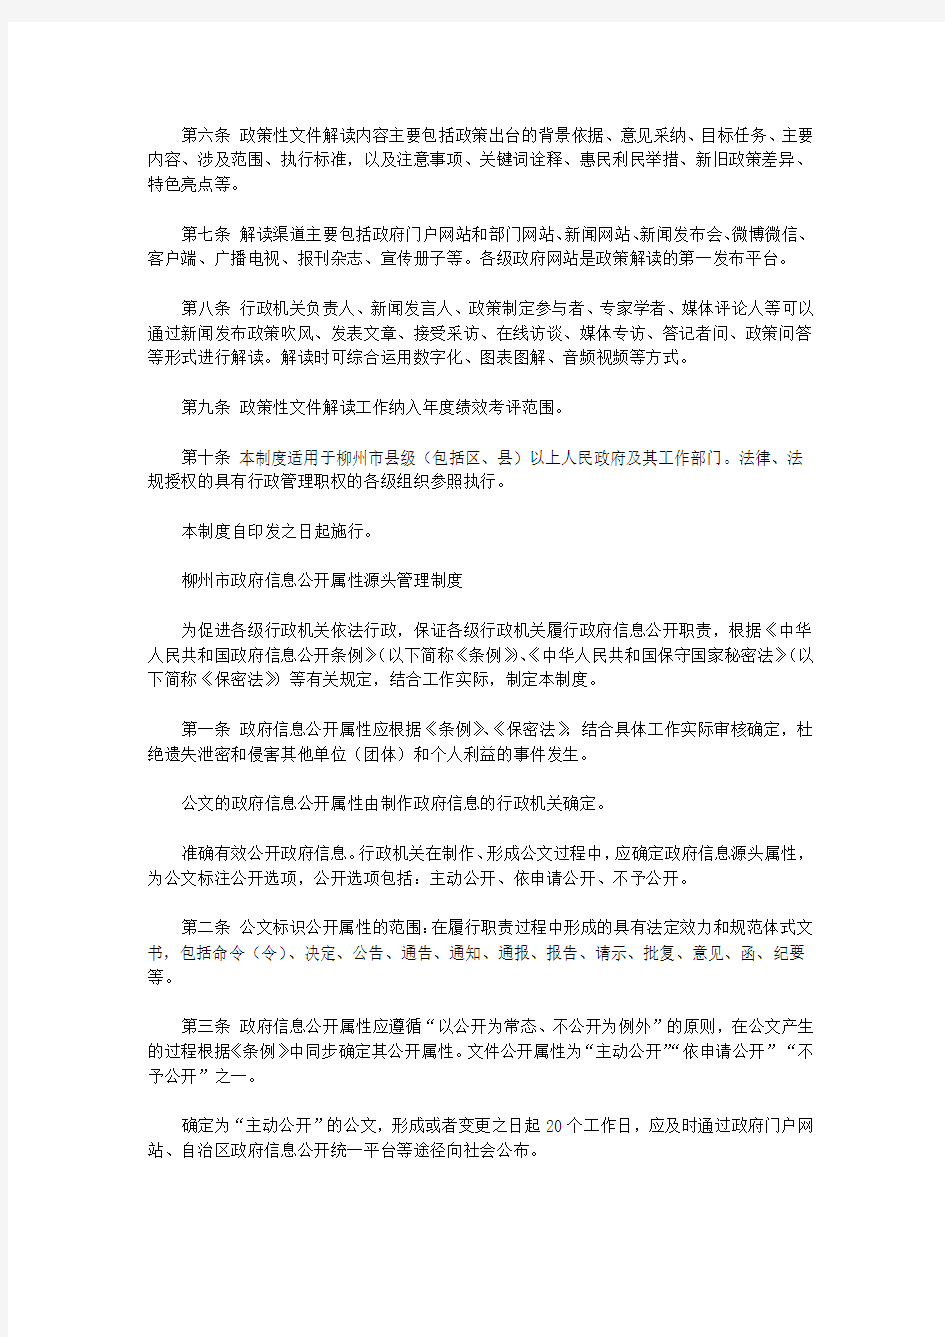 柳州市行政机关政策文件解读制度